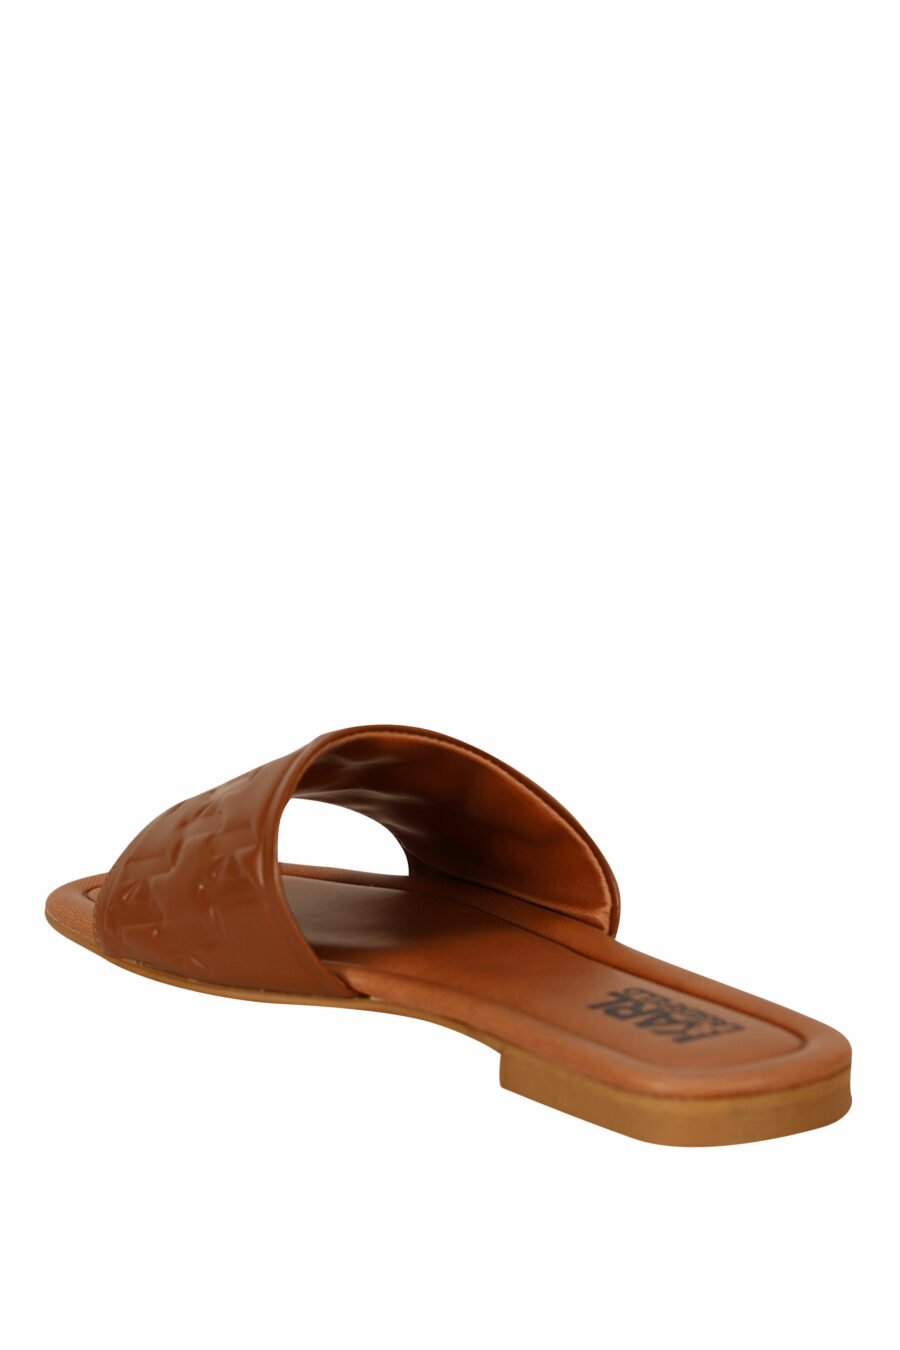 Sandales en cuir marron avec logo monogramme - 5059529404191 3